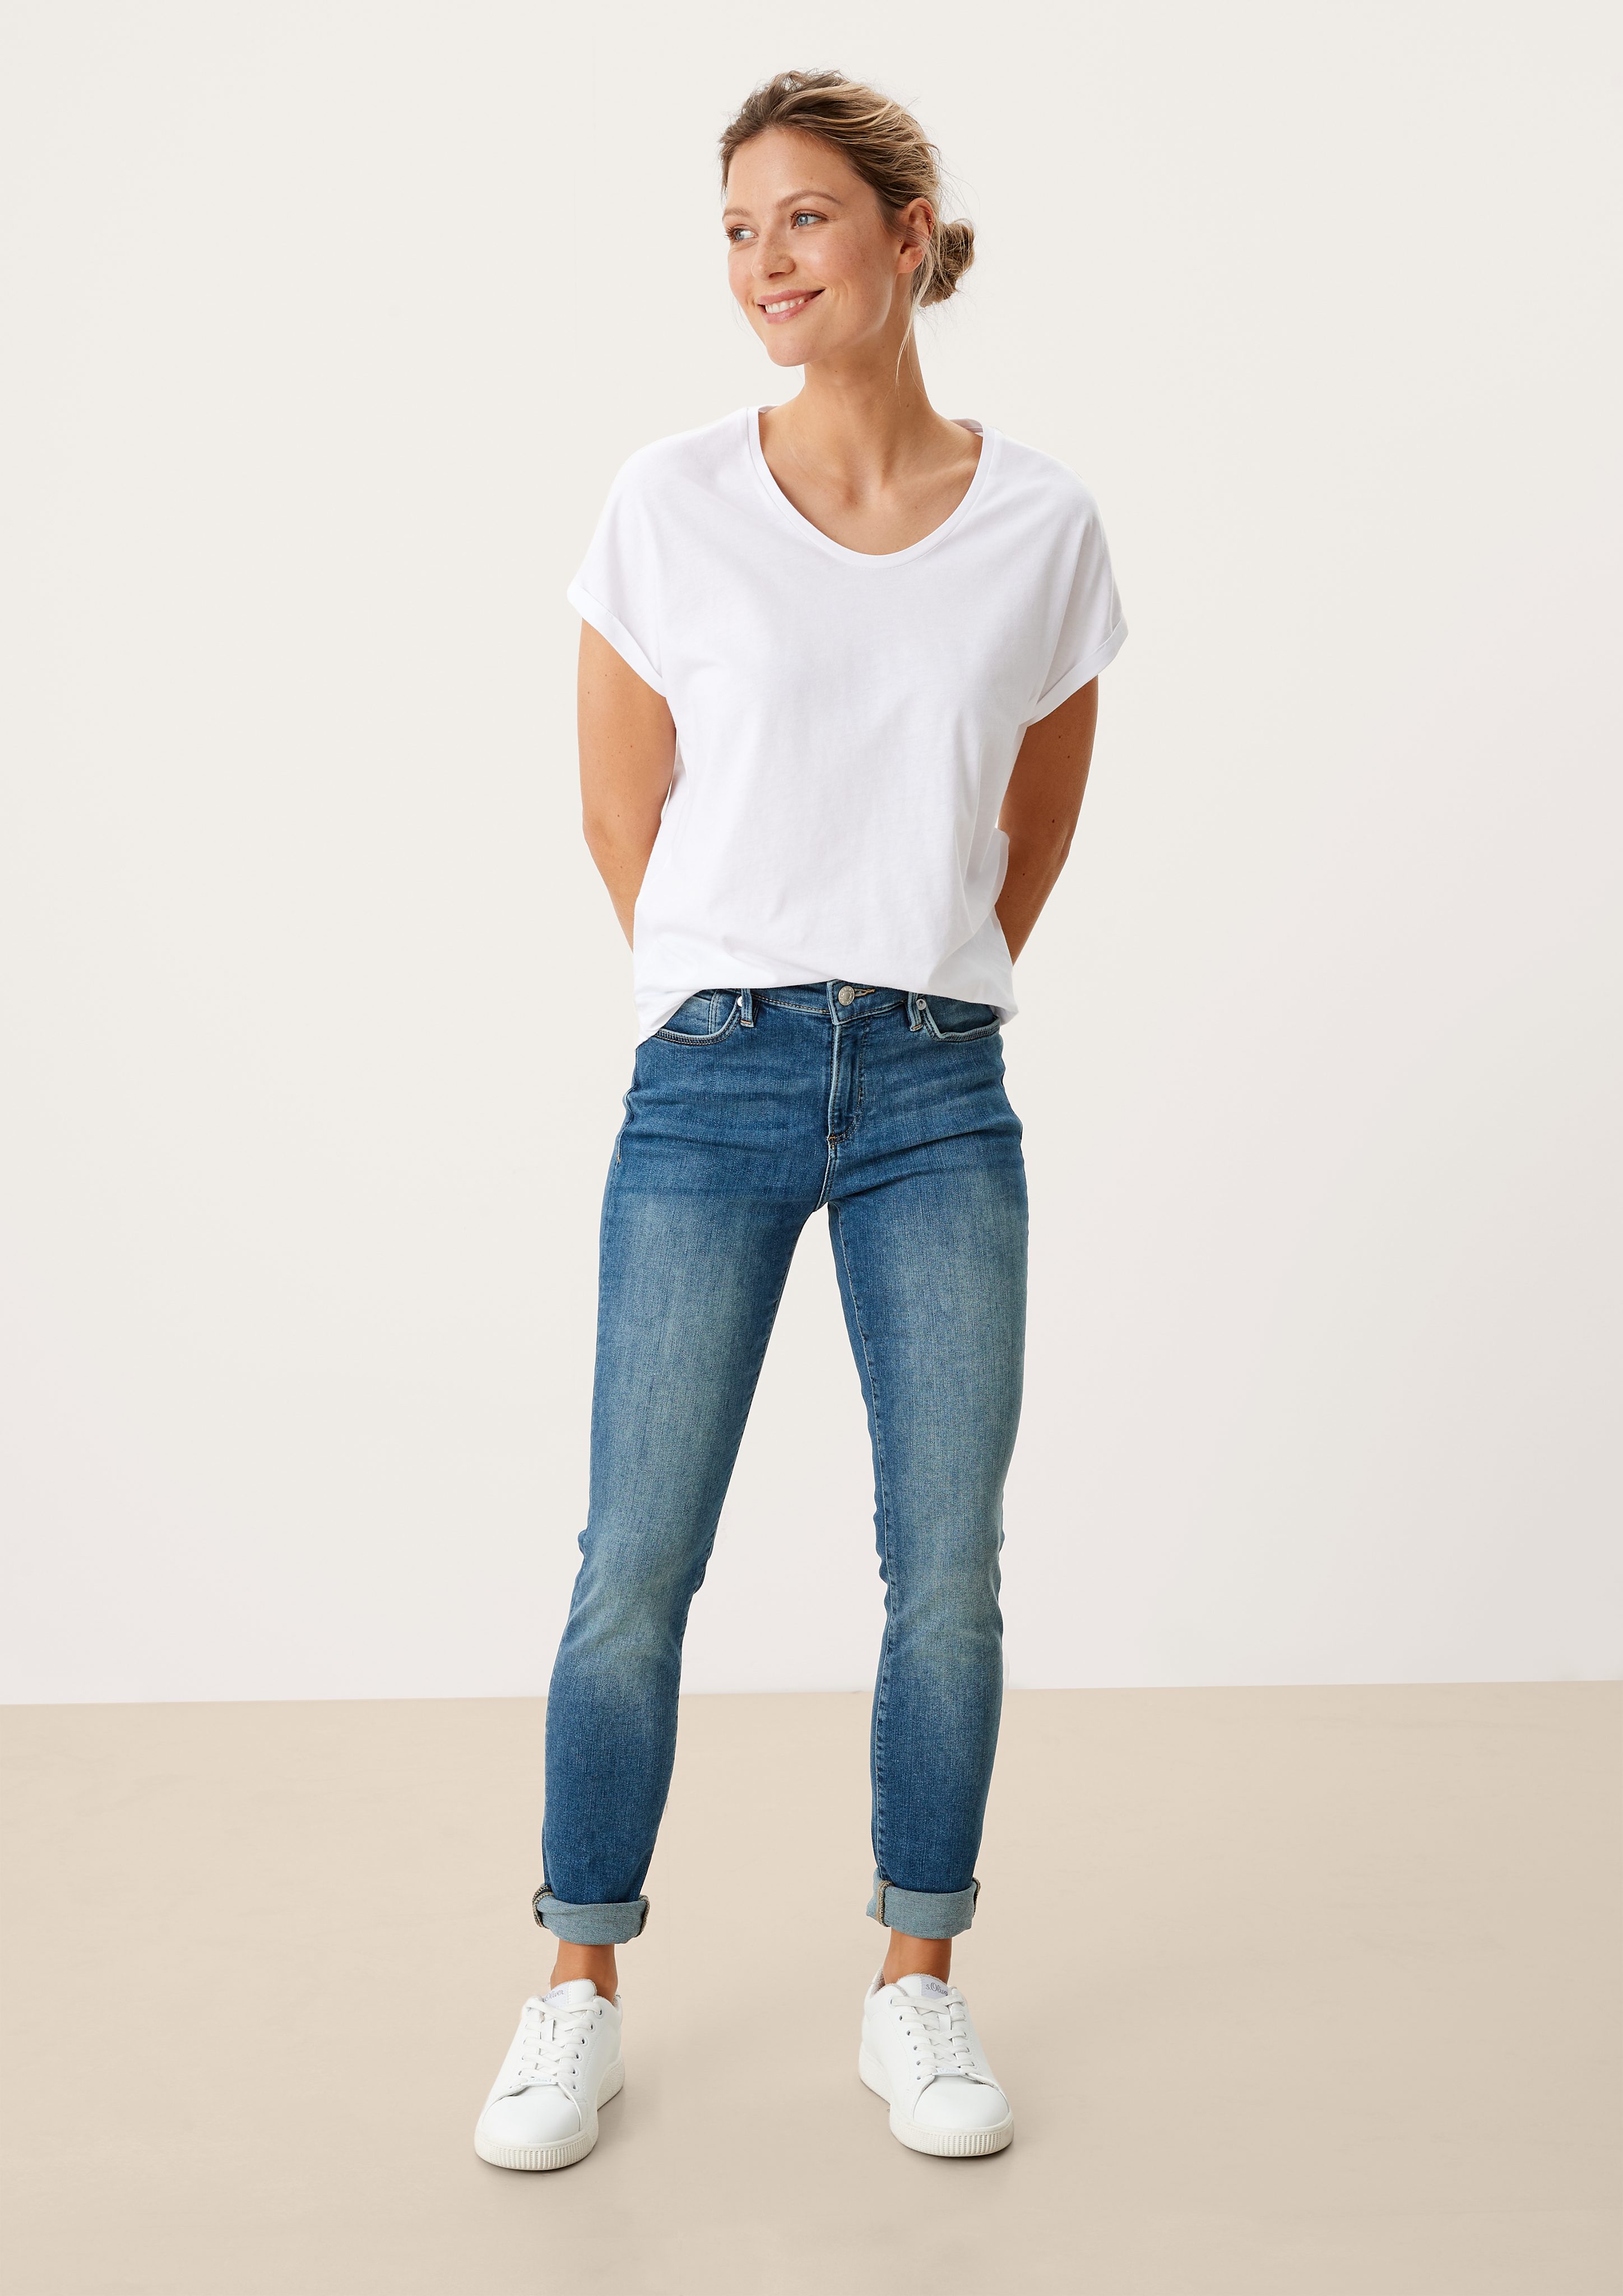 Leder-Patch, Jeans Mid 5-Pocket-Jeans medium Fit Skinny / Izabell blue Skinny s.Oliver / Waschung Leg / Rise